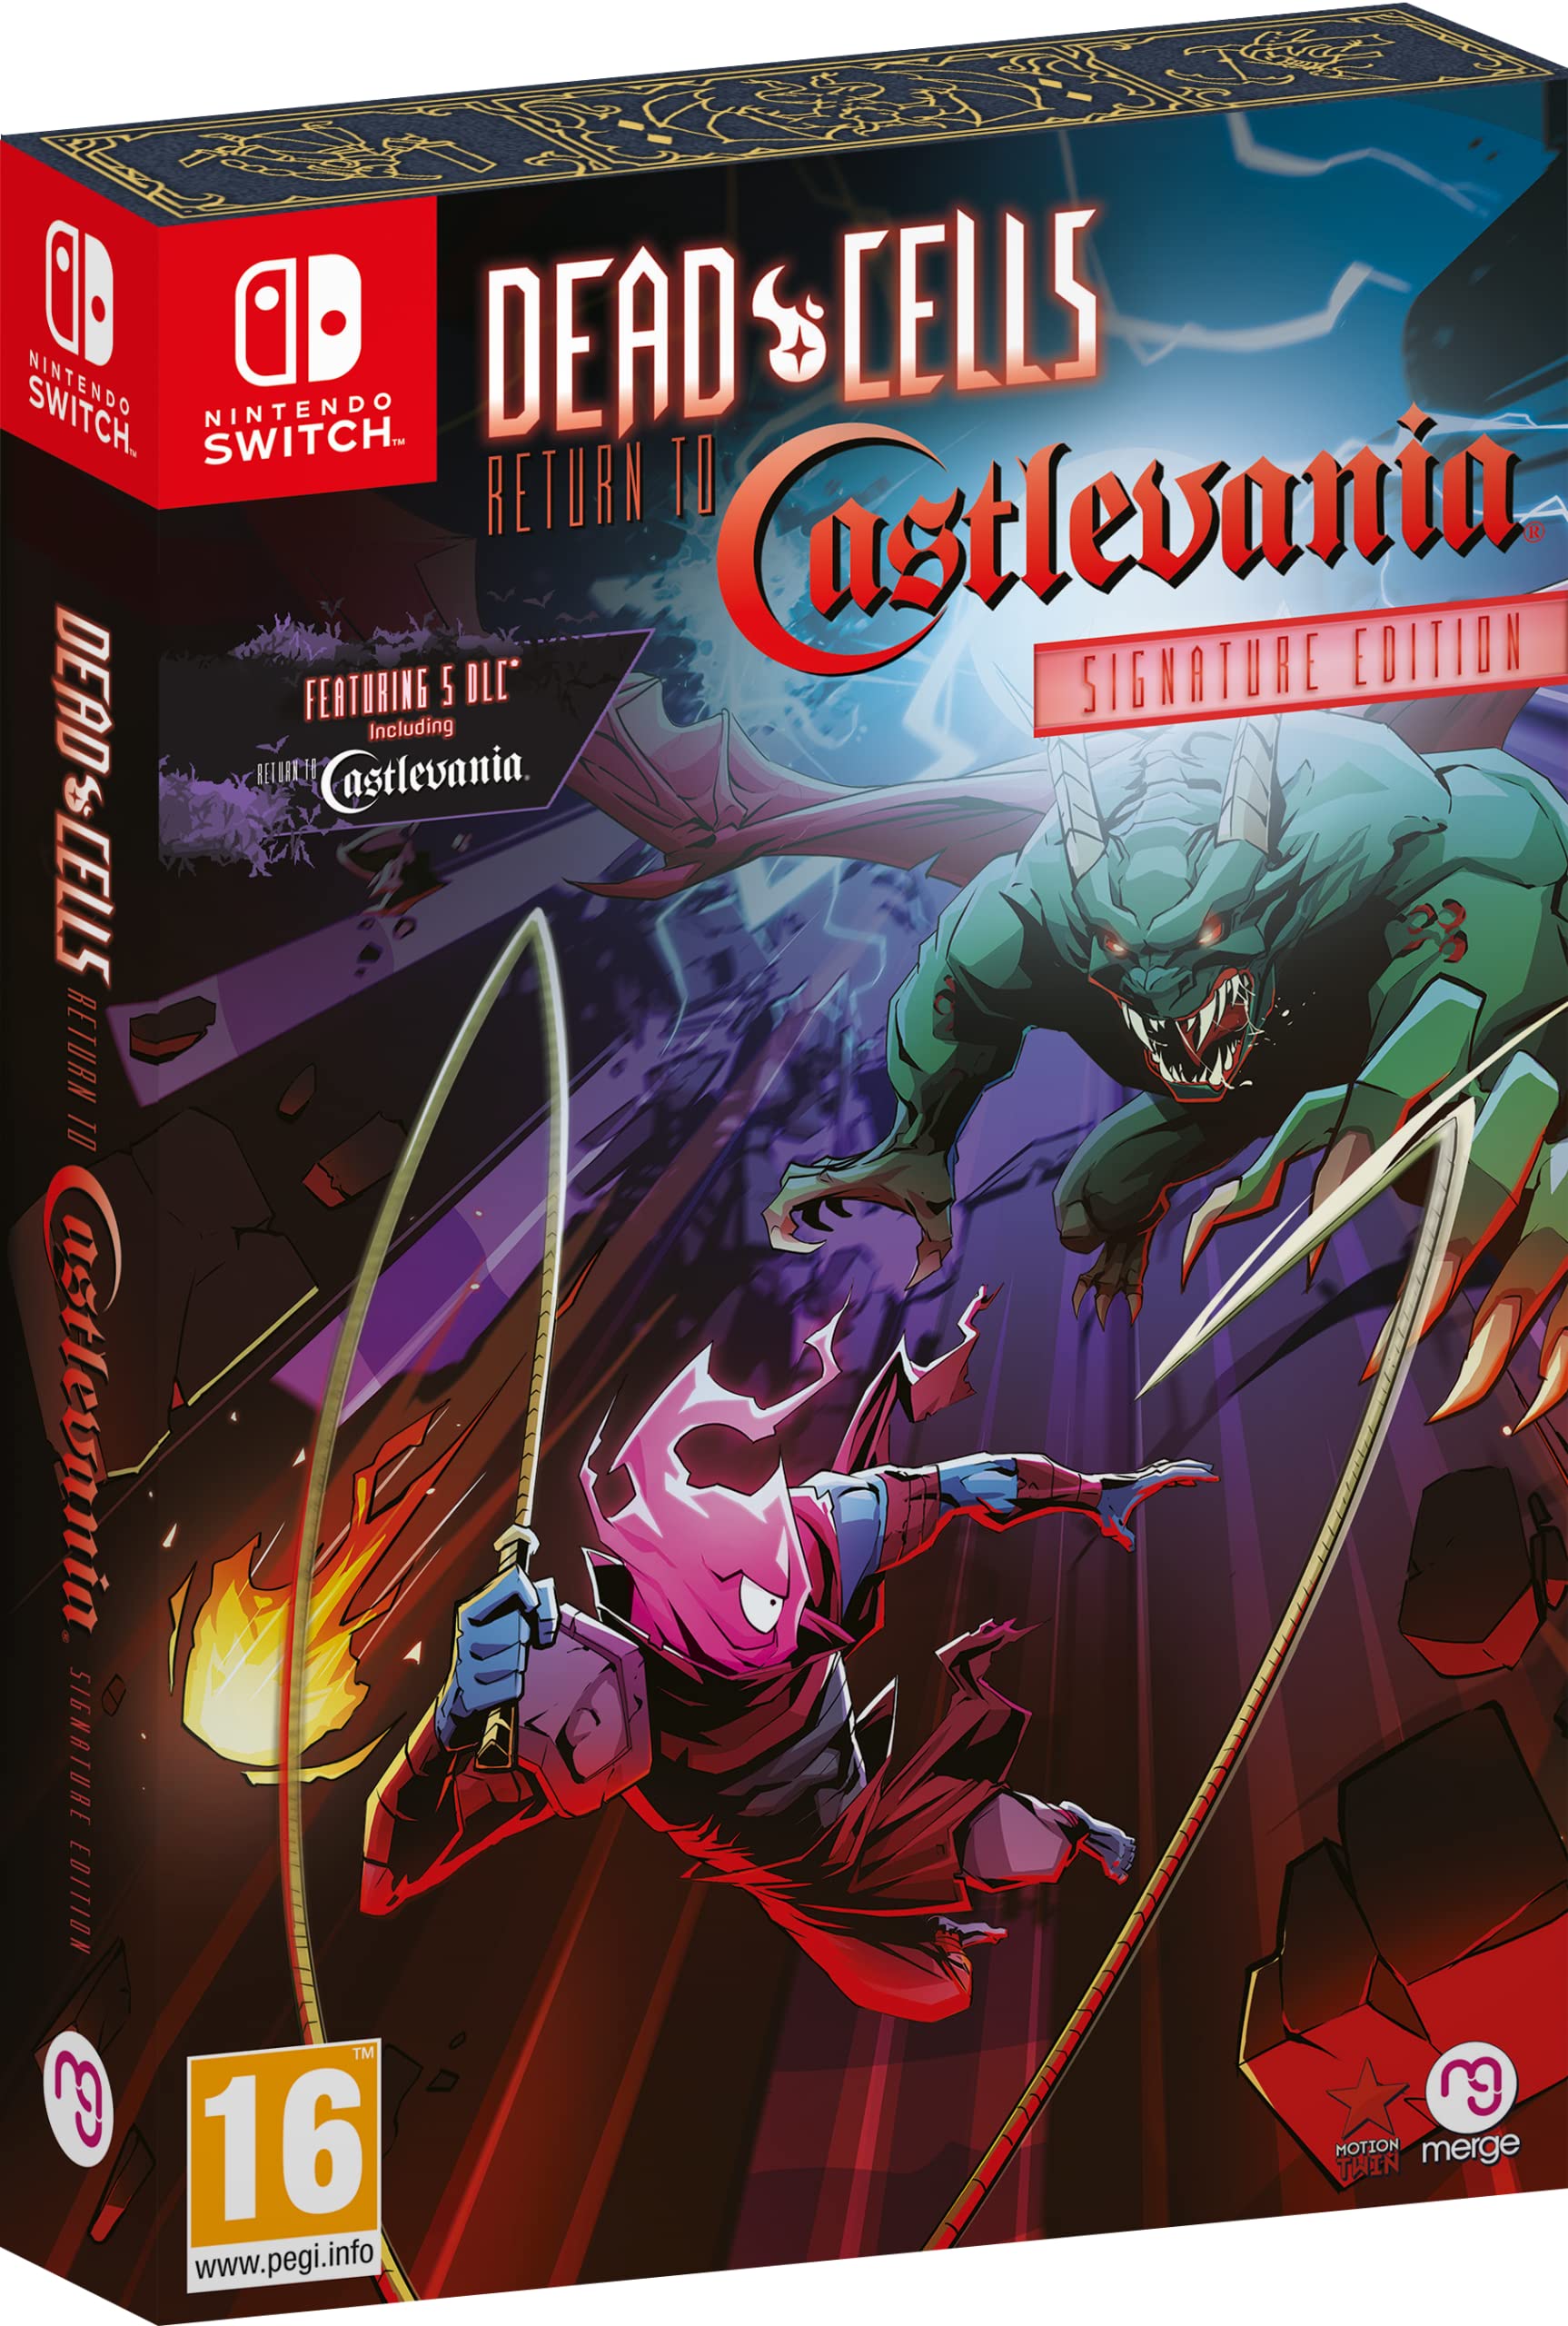 Outlet Shop  Dead Cells Return to Castlevania Signature Edition Nintendo Switch XnC4yO3YC juste de l´acheter